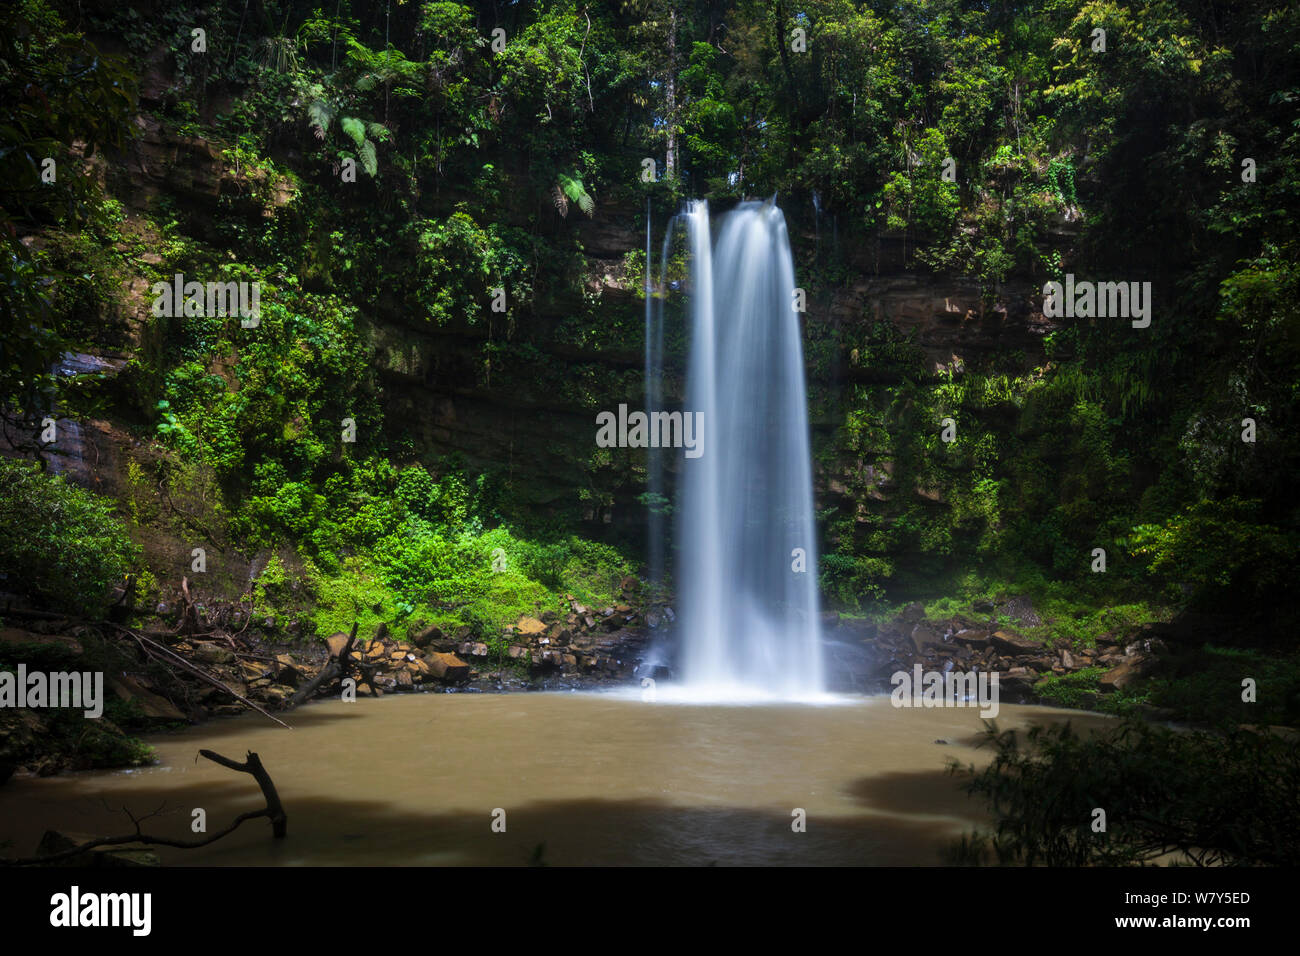 Ginseng fällt, Ein Wasserfall an einem Nebenfluss des Maliau River. Maliau Becken, Borneo, Mai 2011. Stockfoto